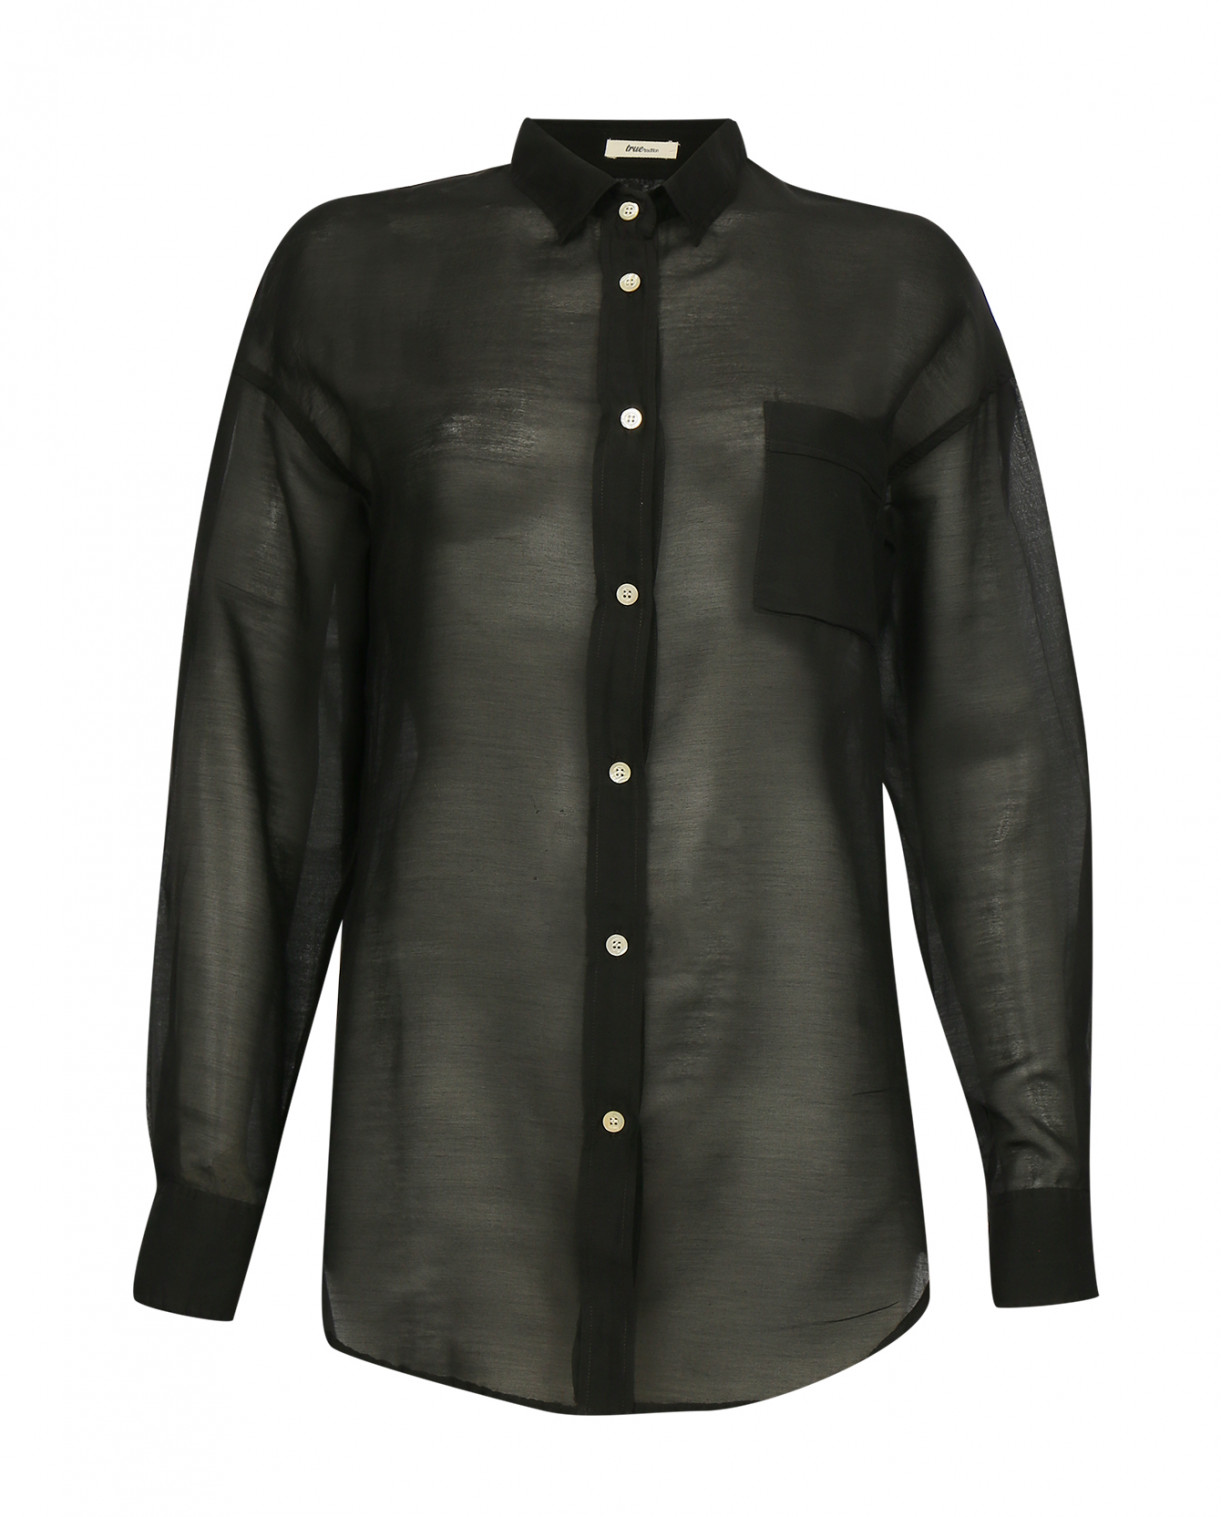 Рубашка из хлопка и шелка с нагрудным карманом и контрастными пуговицами True Tradition  –  Общий вид  – Цвет:  Черный